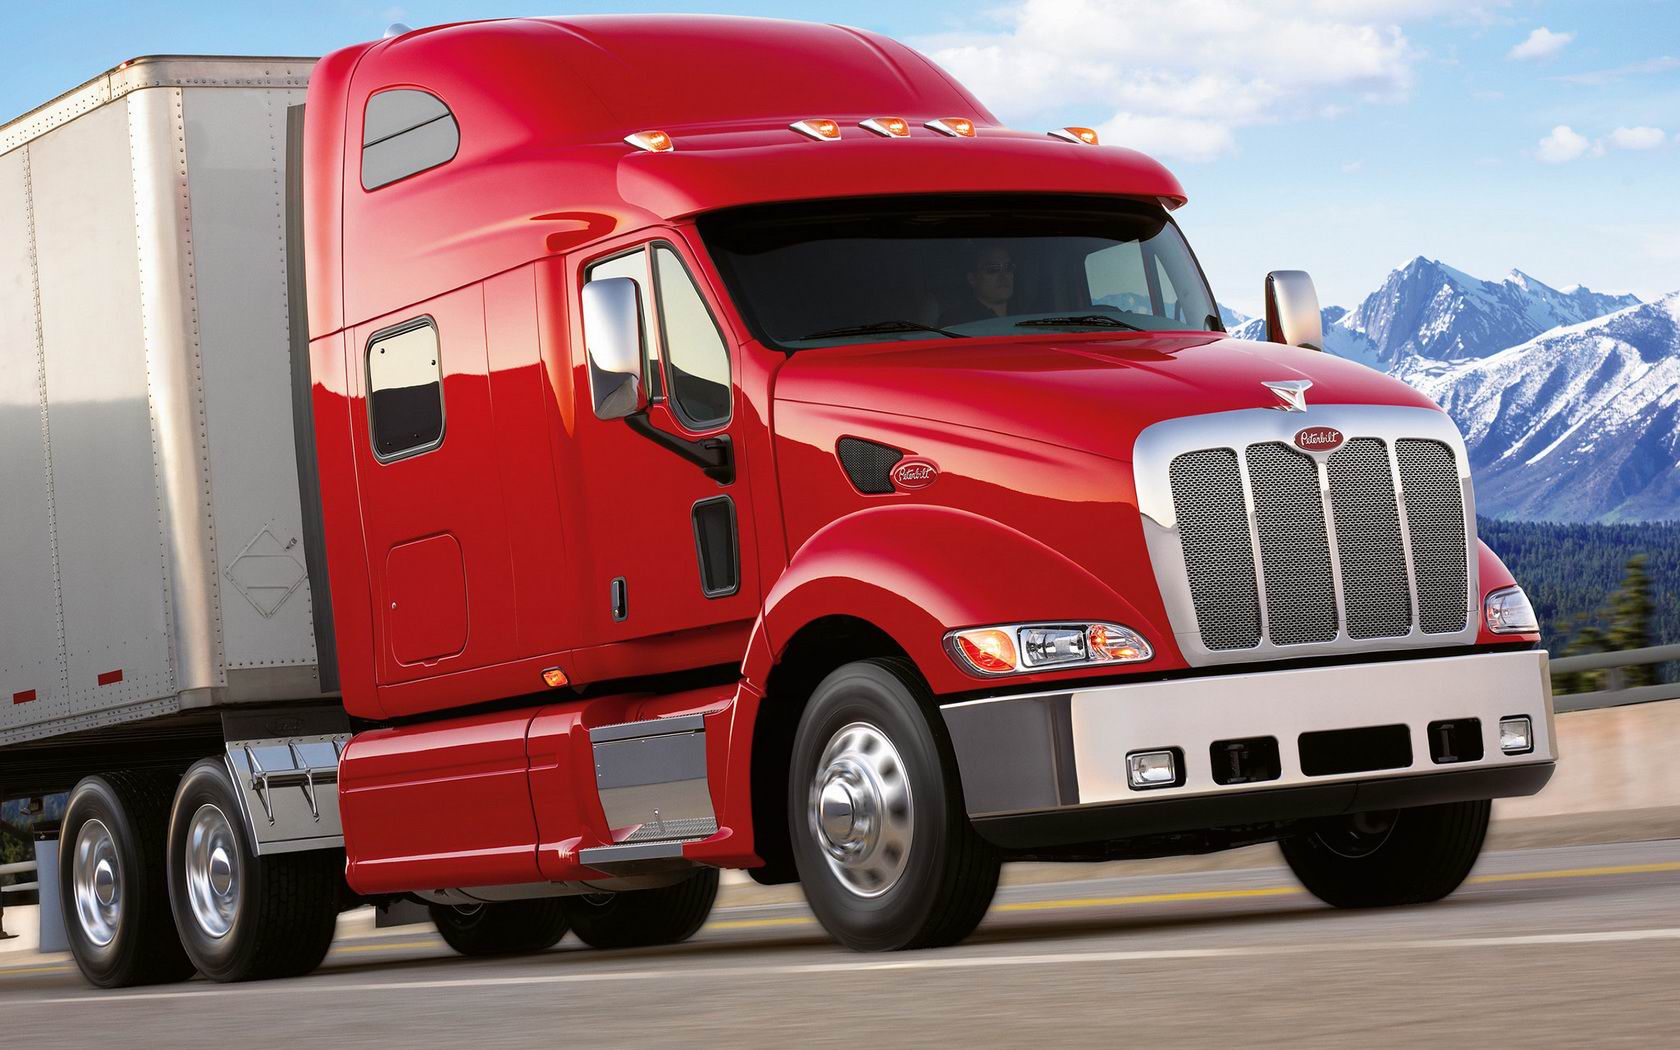 Download full size Trucks wallpaper / Vehicles / 1680x1050